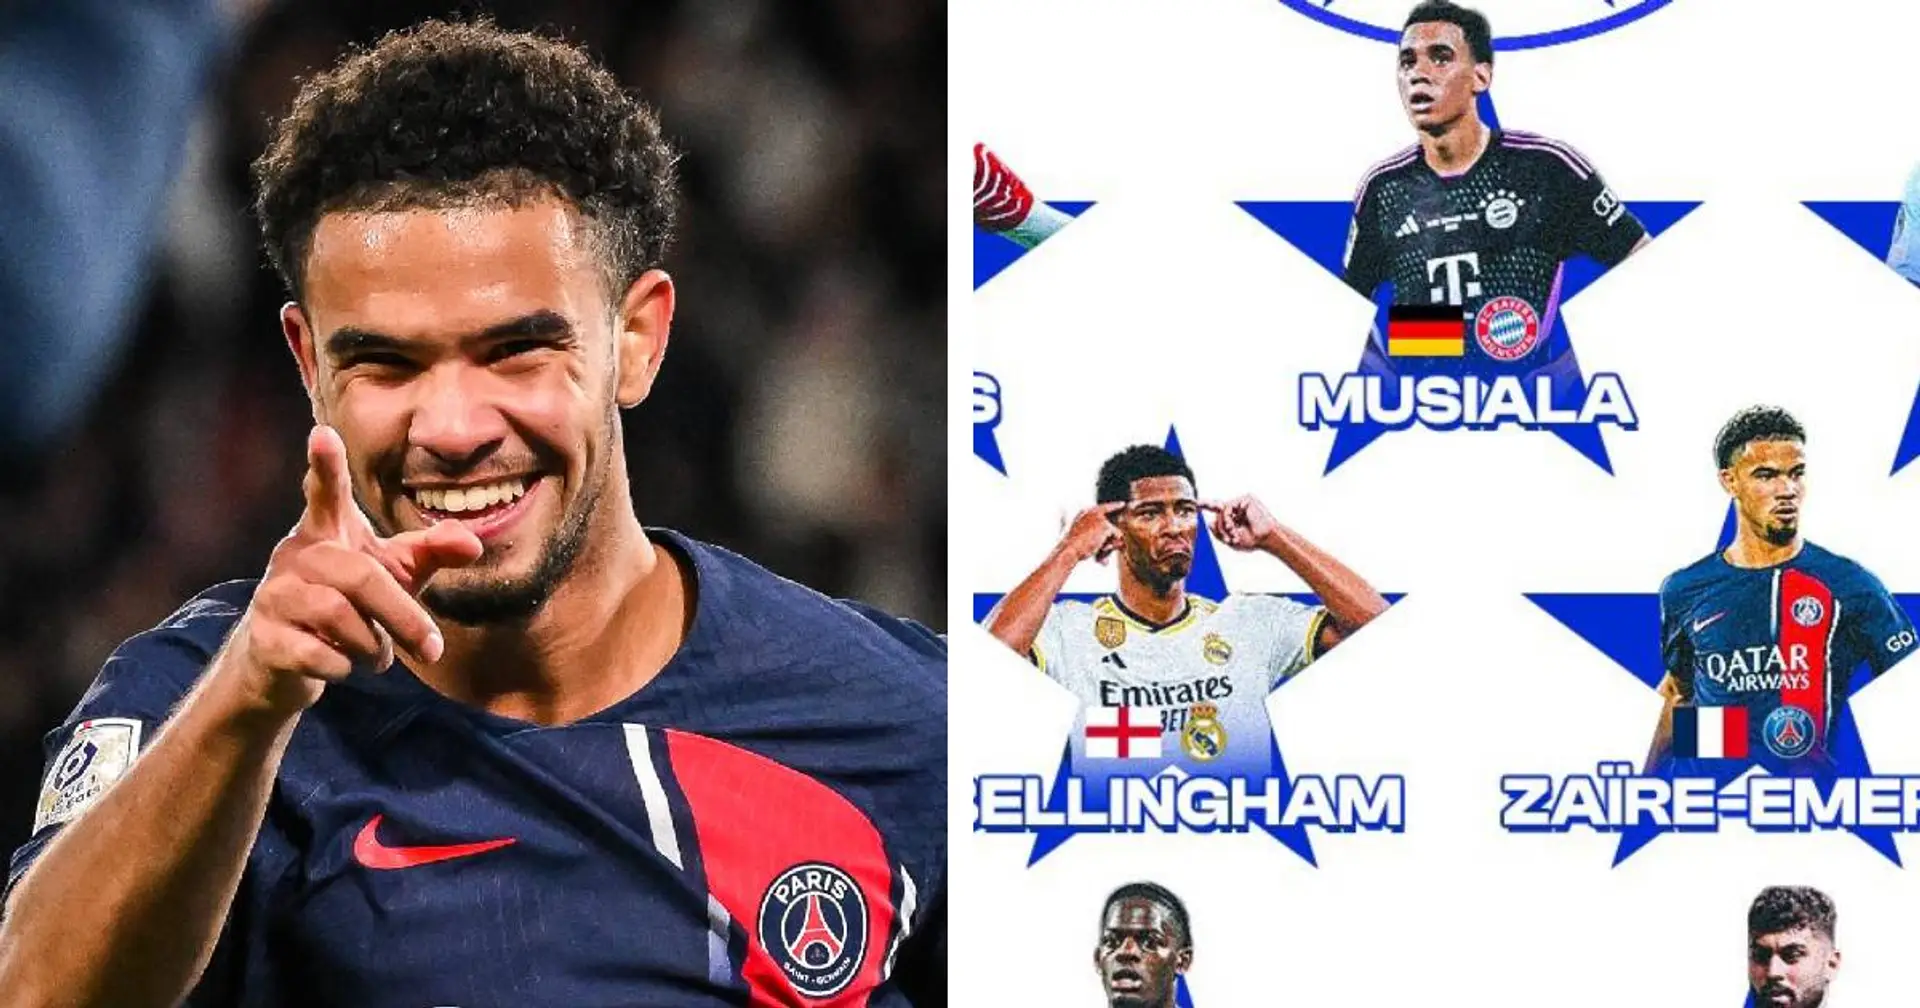 Le XI des meilleurs U21 en 2023 dévoilé - 3 joueurs parisiens présents